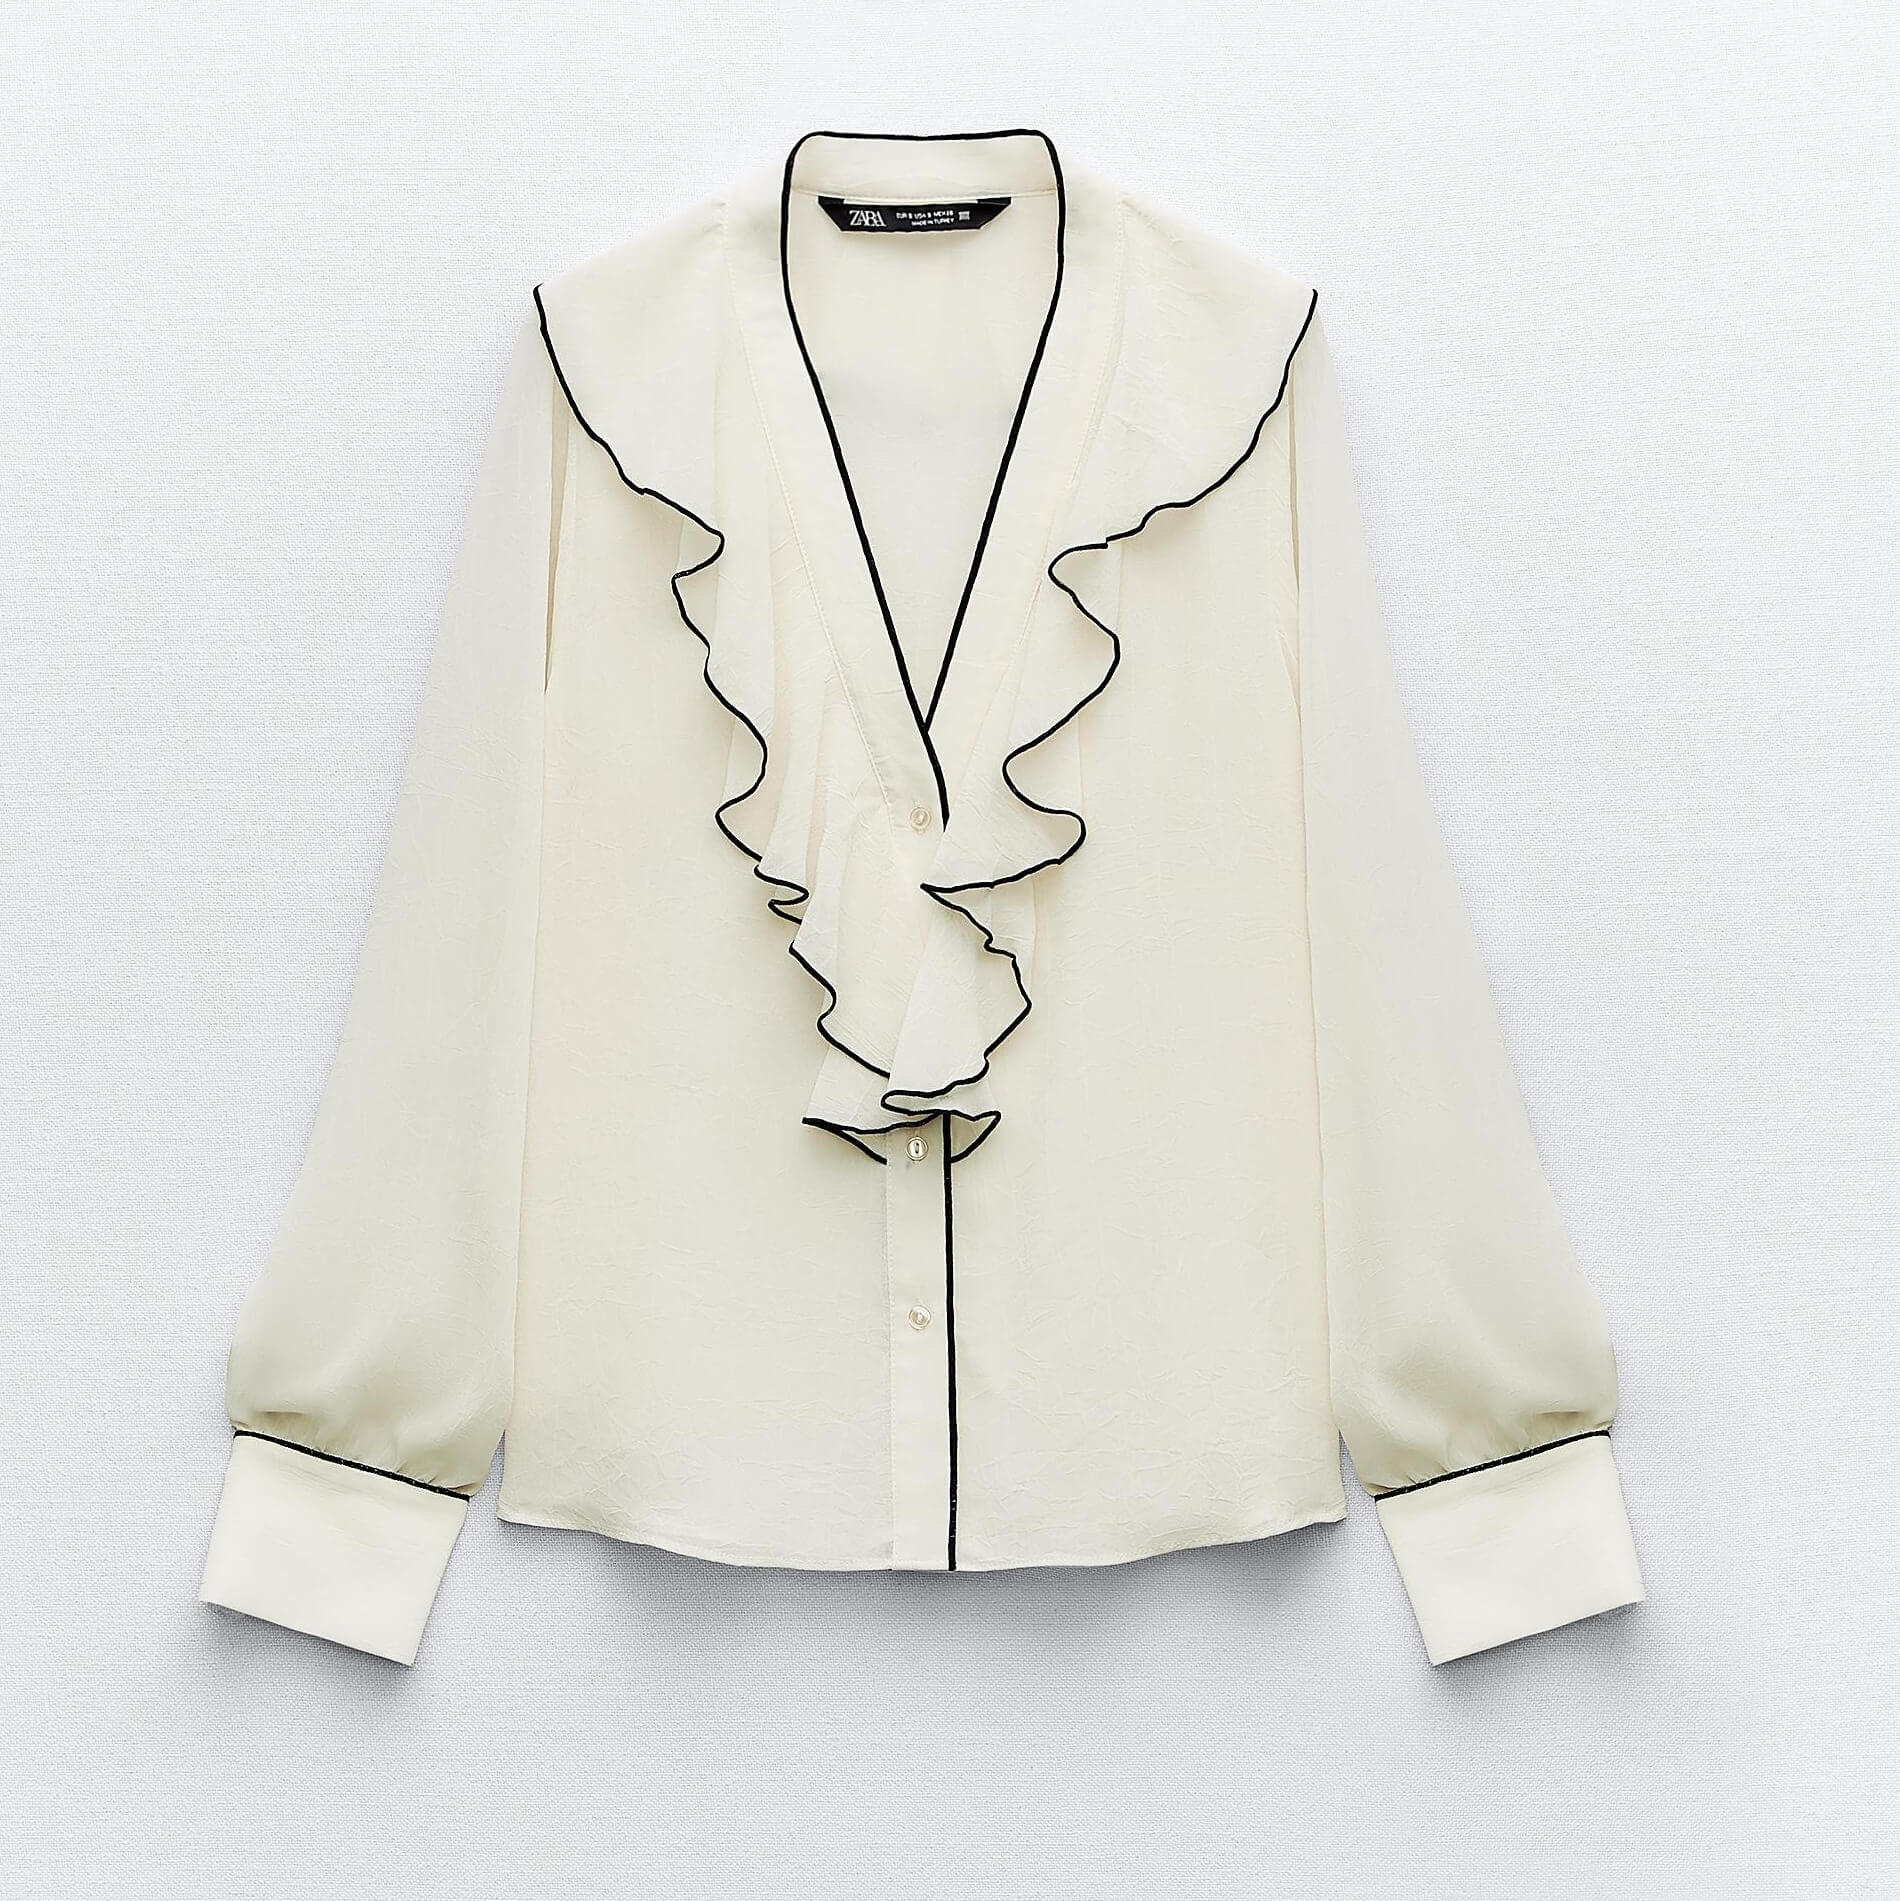 Блузка ZaraRuffled With Contrast Piping, светло-бежевый женская блузка с v образным вырезом длинным рукавом и вышивкой